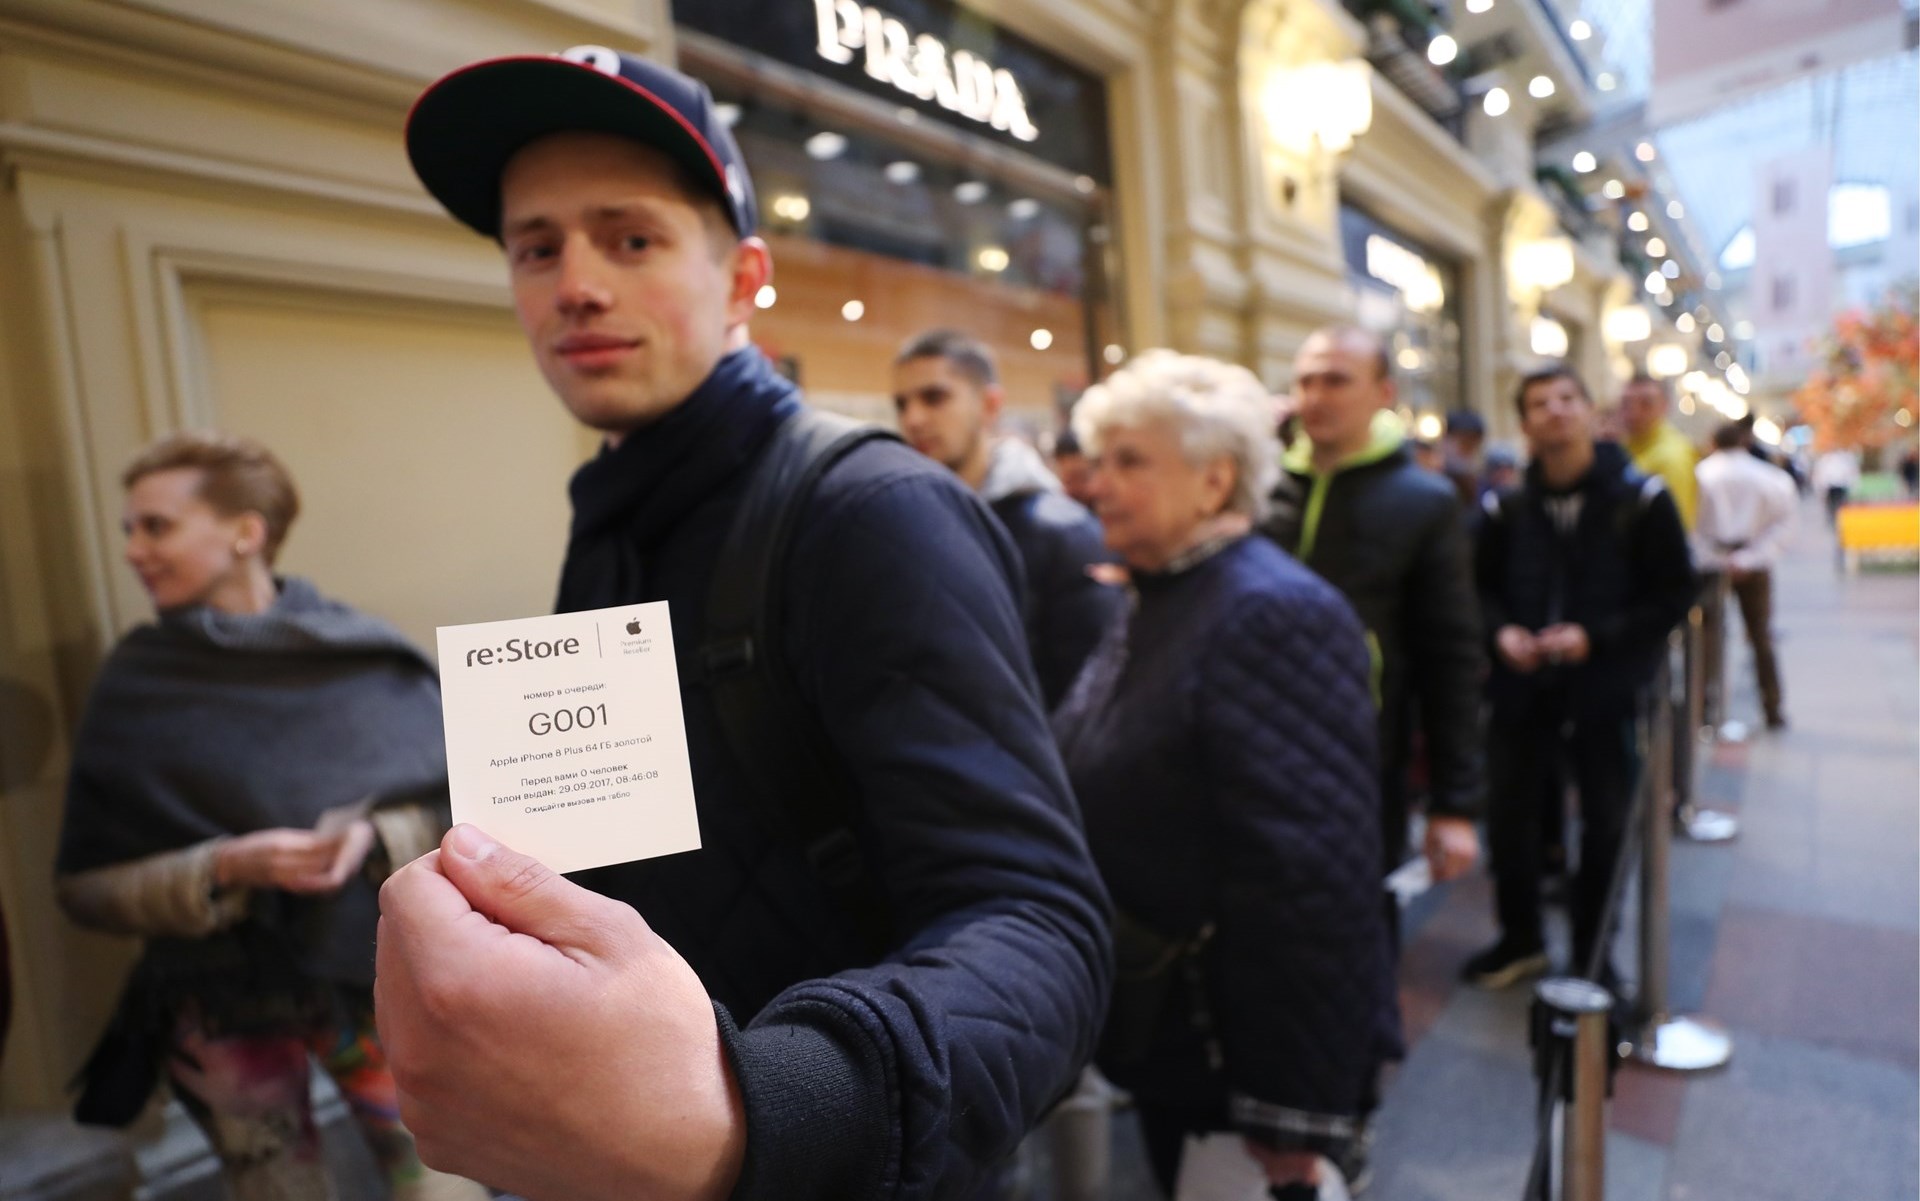 Near crowd. Очередь за айфоном. Очередь в магазин Apple в Москве. Люди в очереди за айфоном. Очередь за айфоном ГУМ.